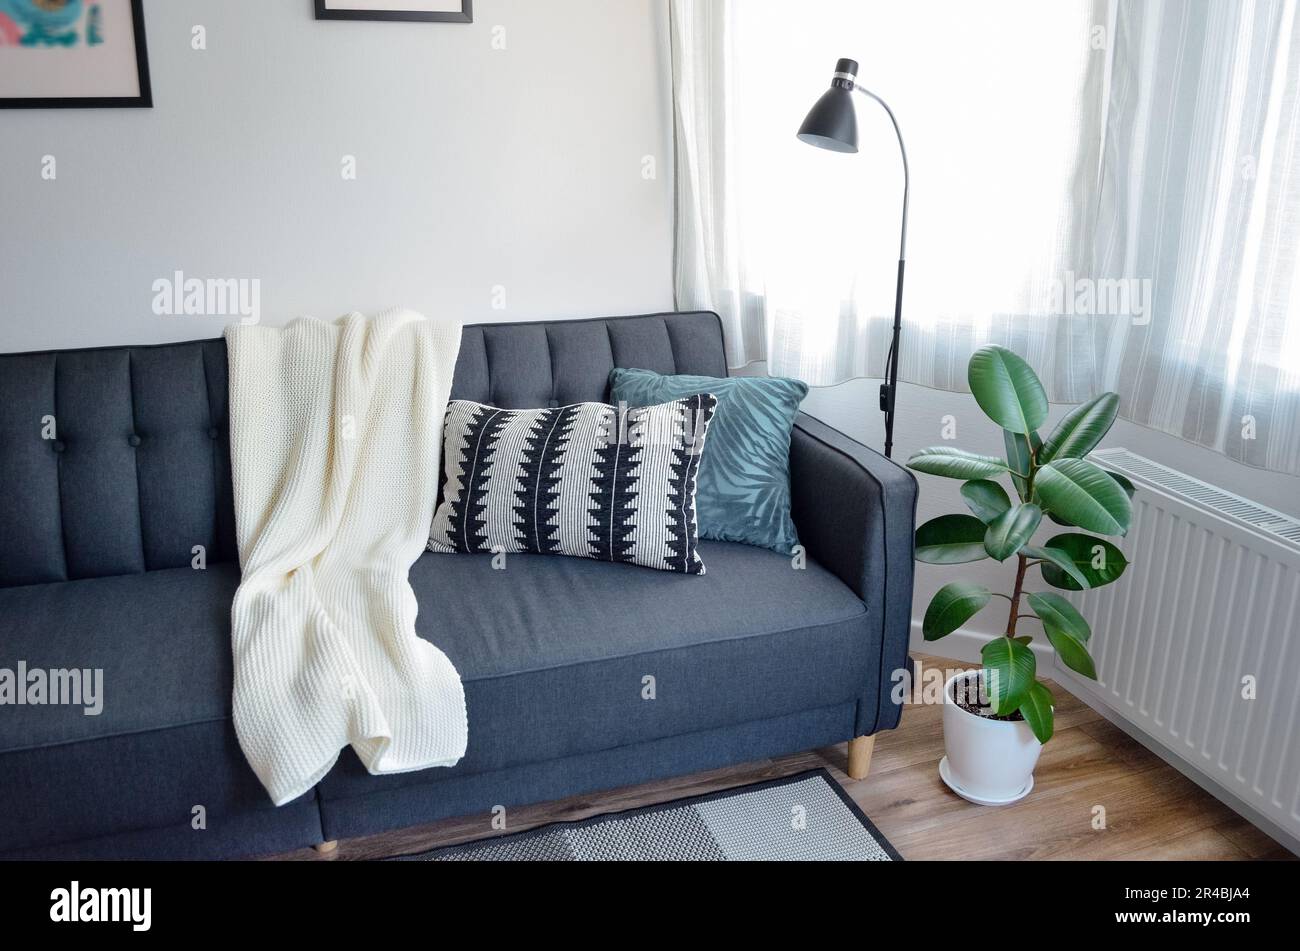 Modernes Studio-Apartment im skandinavischen Interieur in Weiß und Grau, Sofa im Wohnbereich Stockfoto